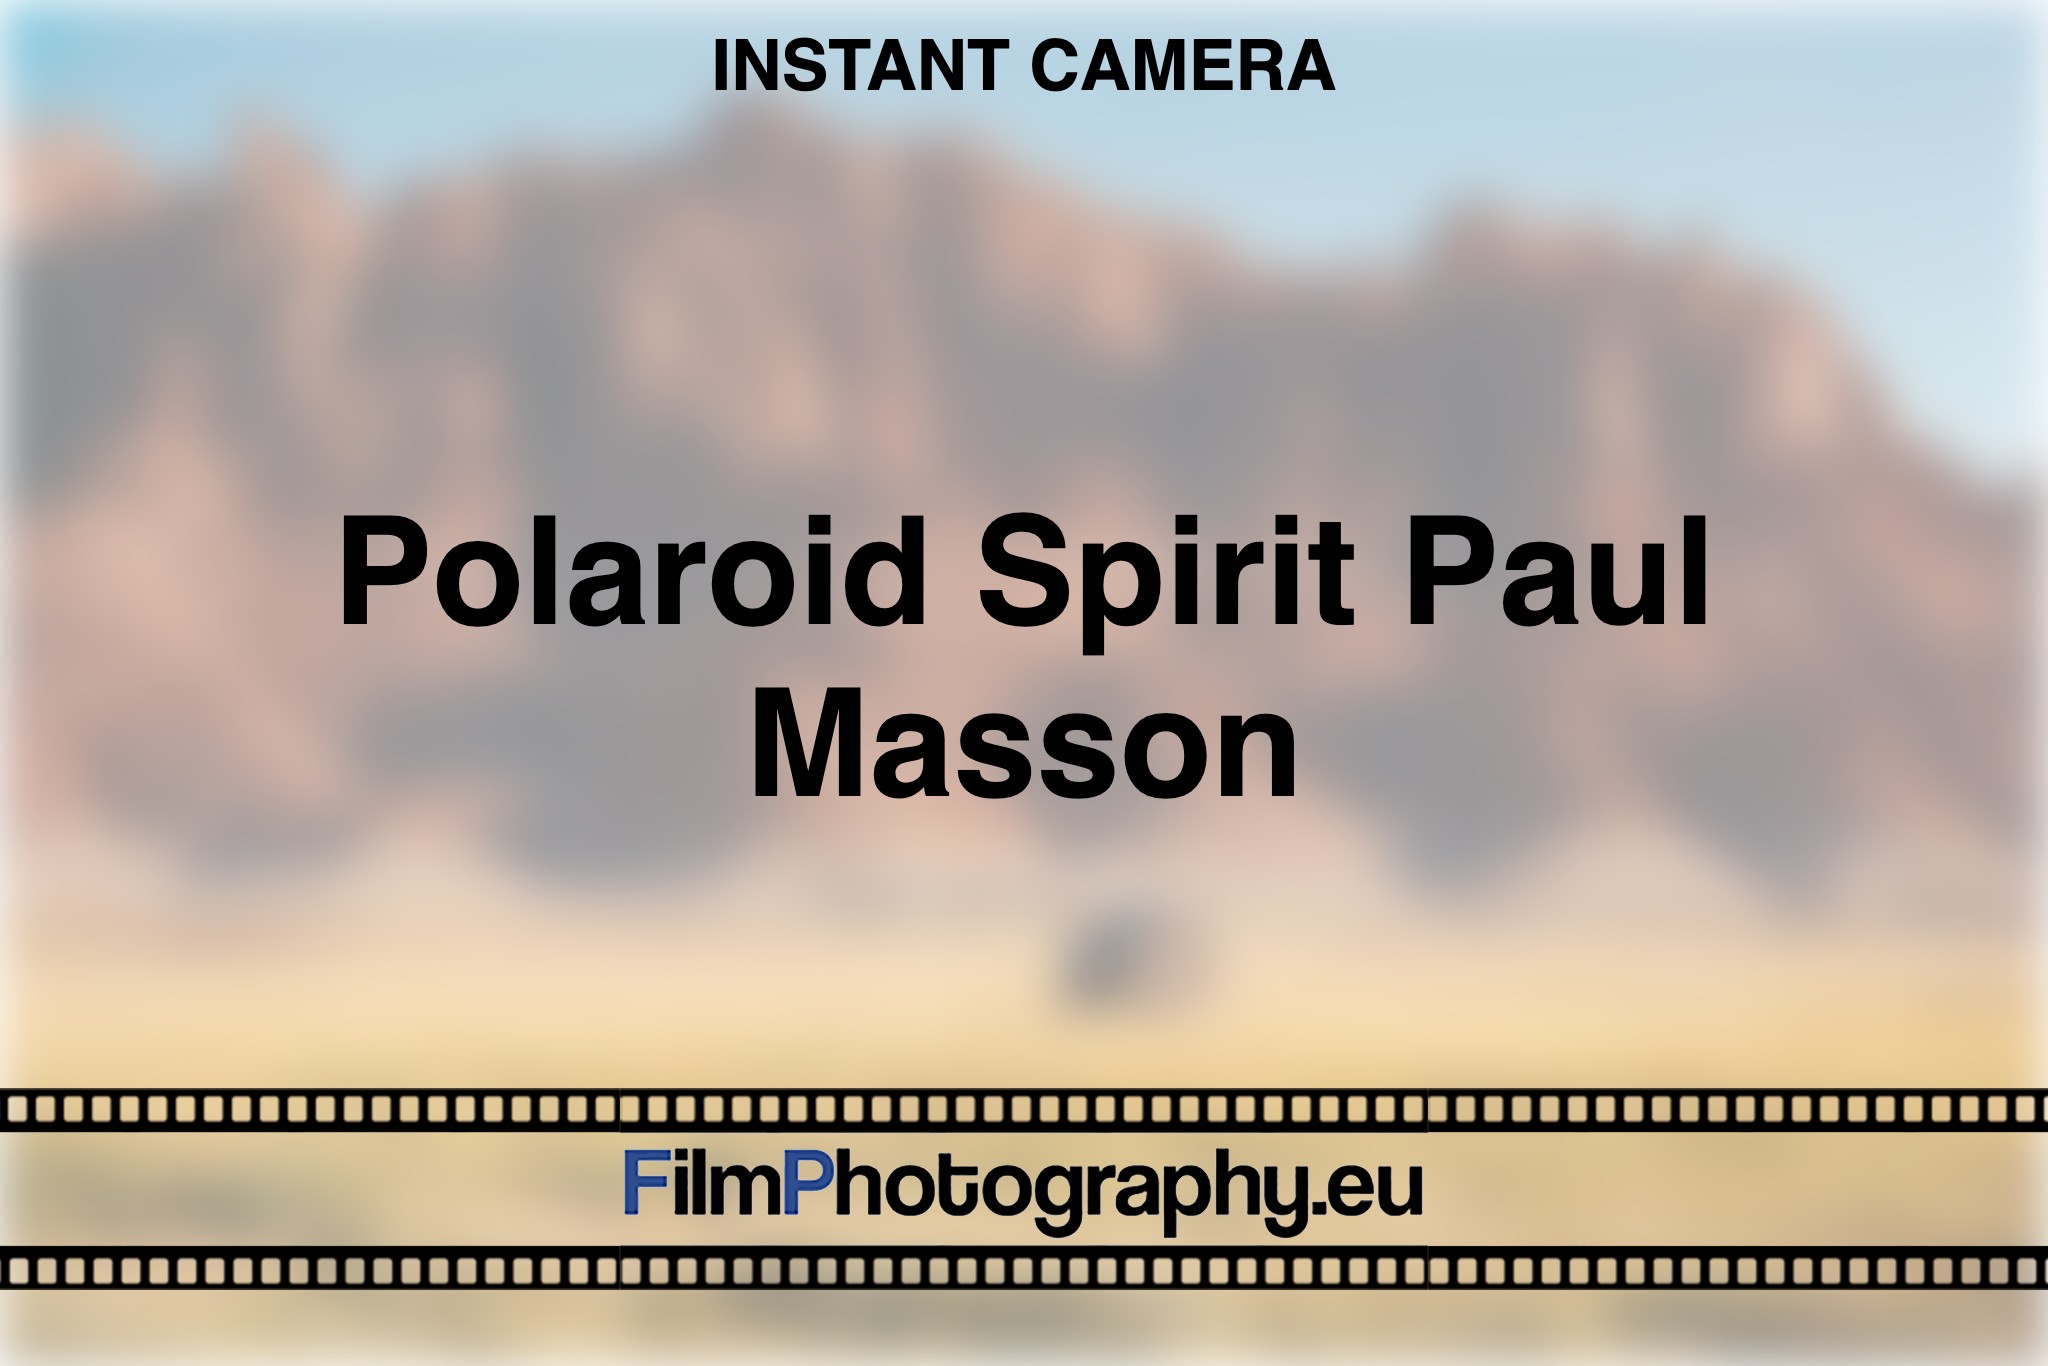 polaroid-spirit-paul-masson-instant-camera-bnv